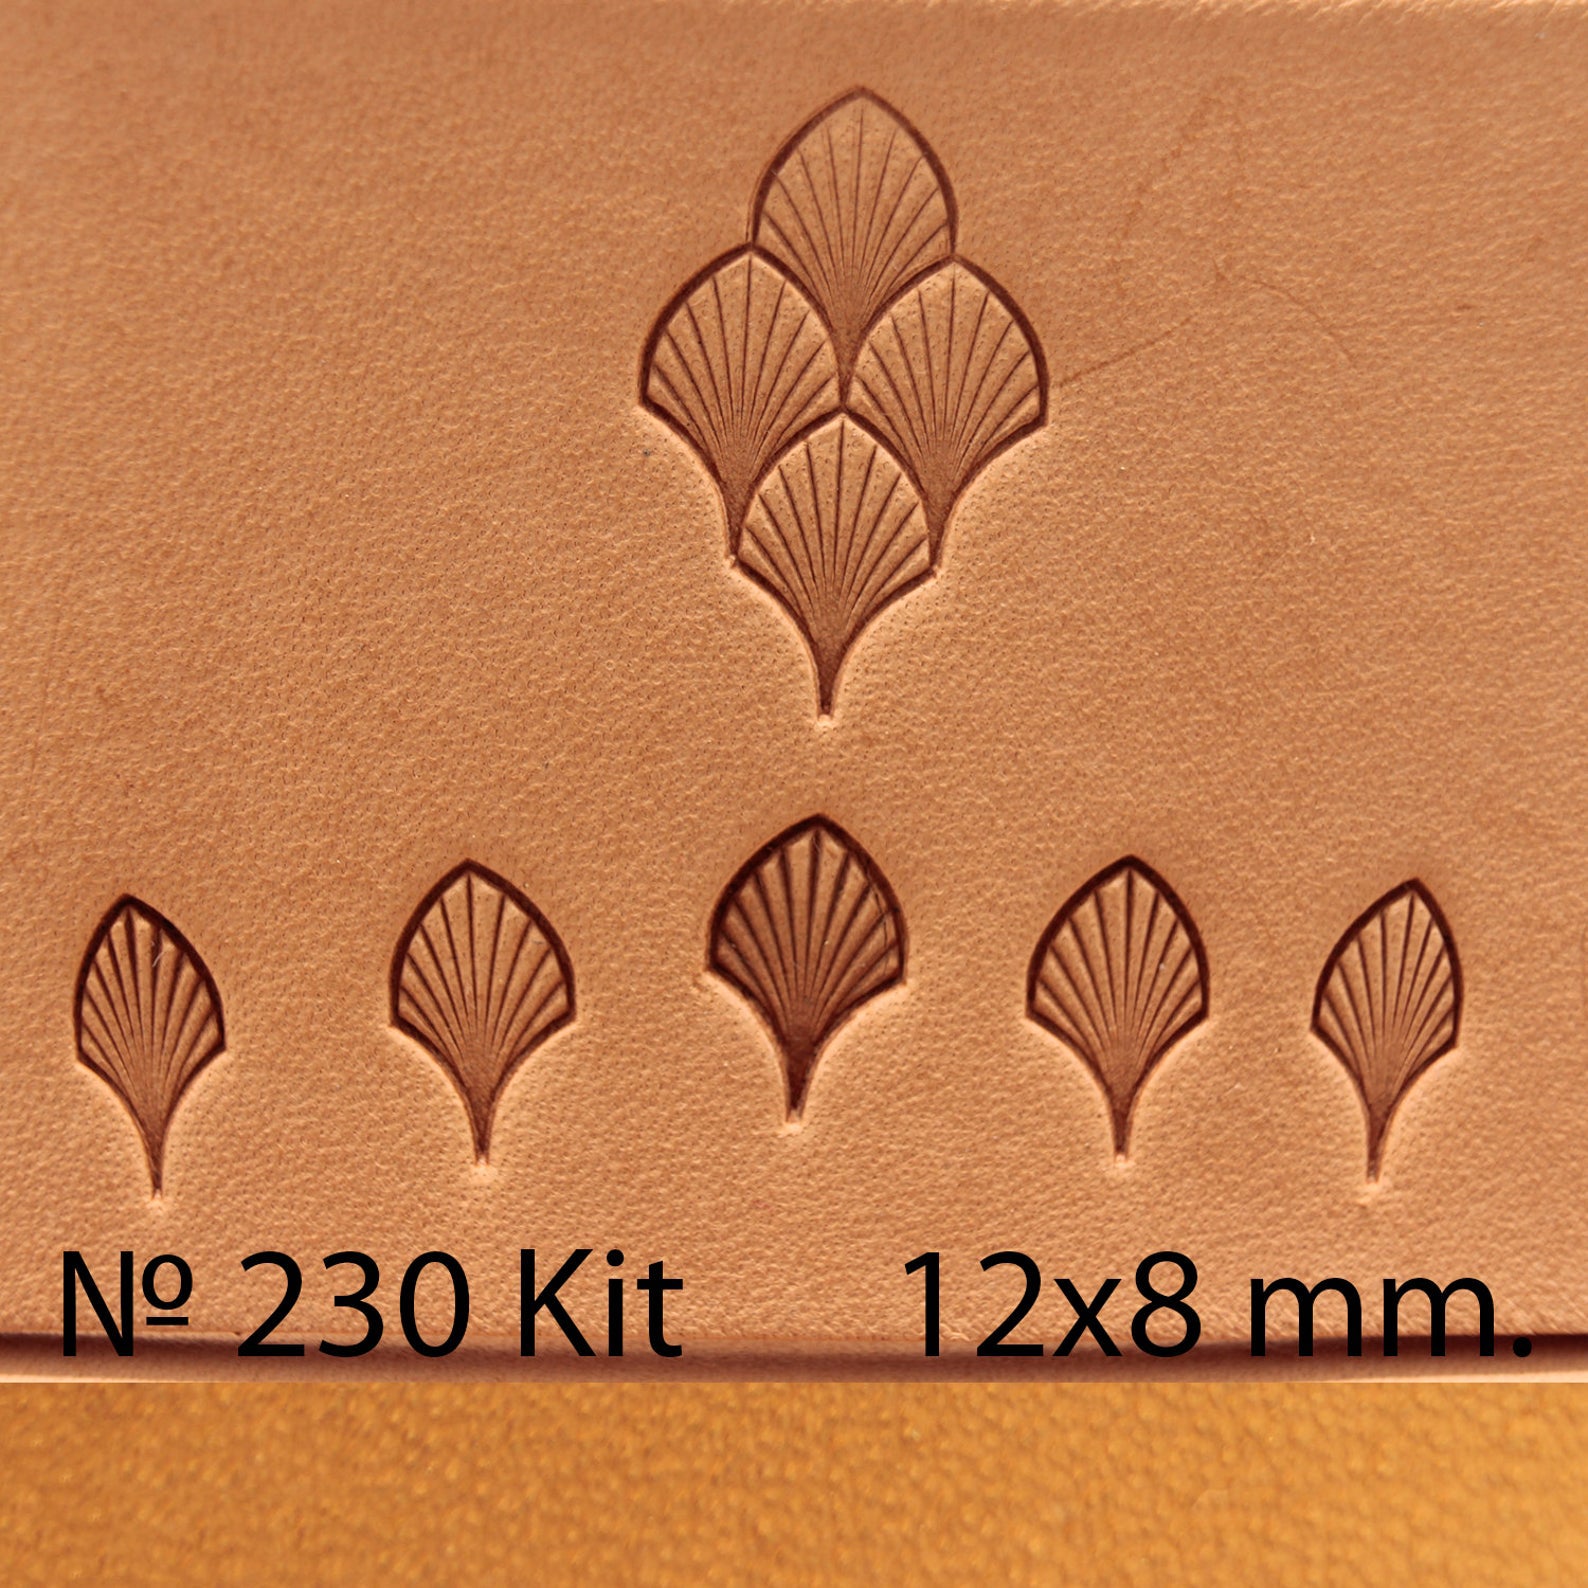 Leather stamp tool Kit #230 - SpasGoranov